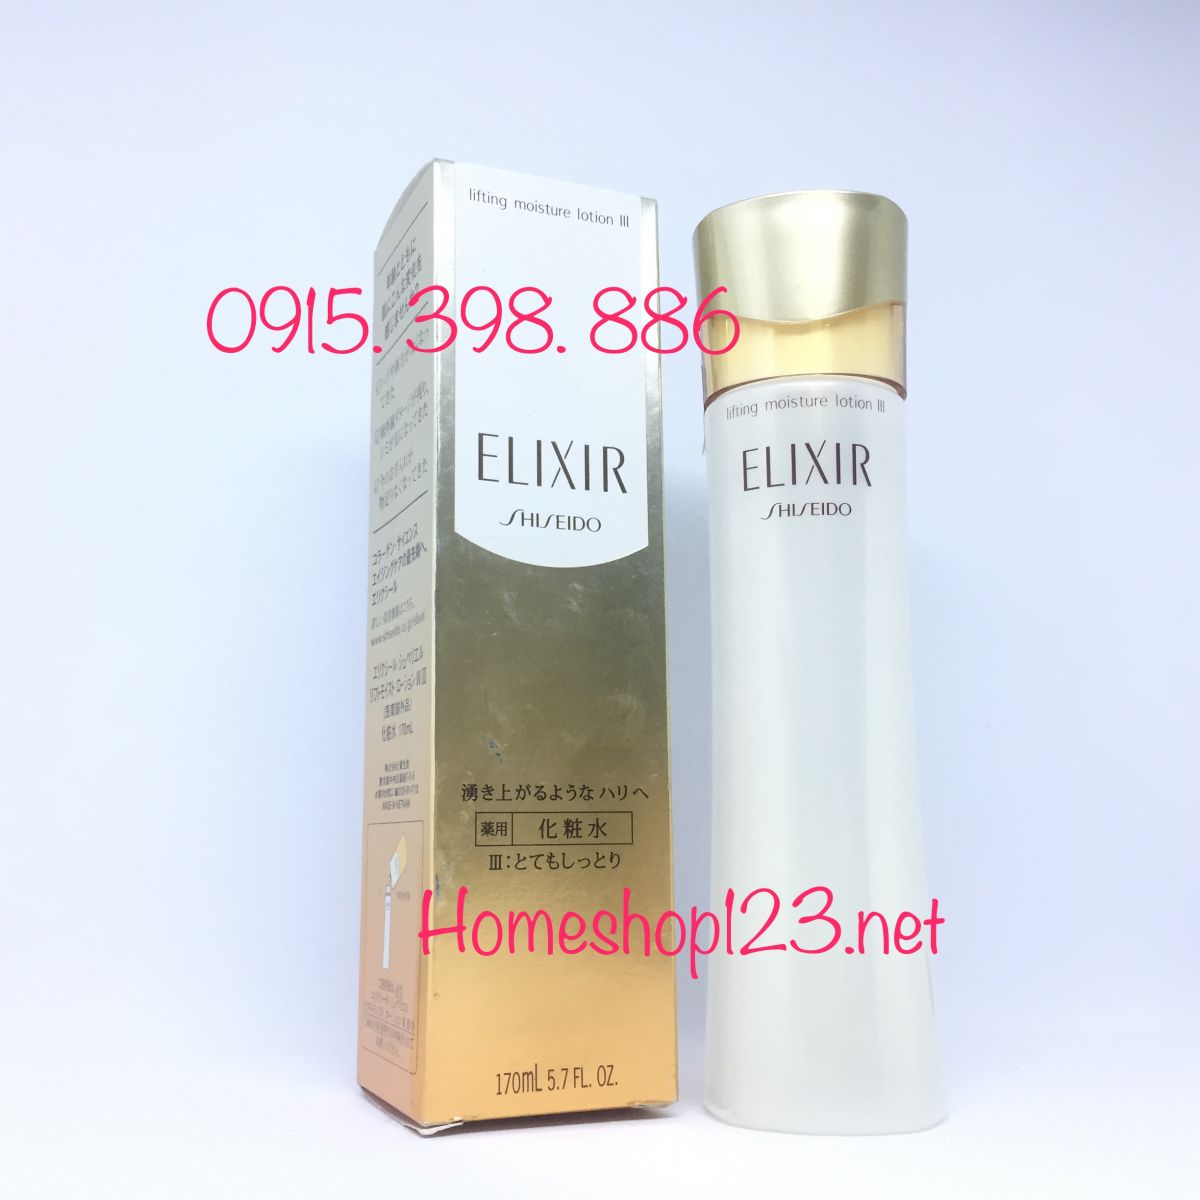 Nước hoa hồng Shiseido Elixir lifting moisture lotion III